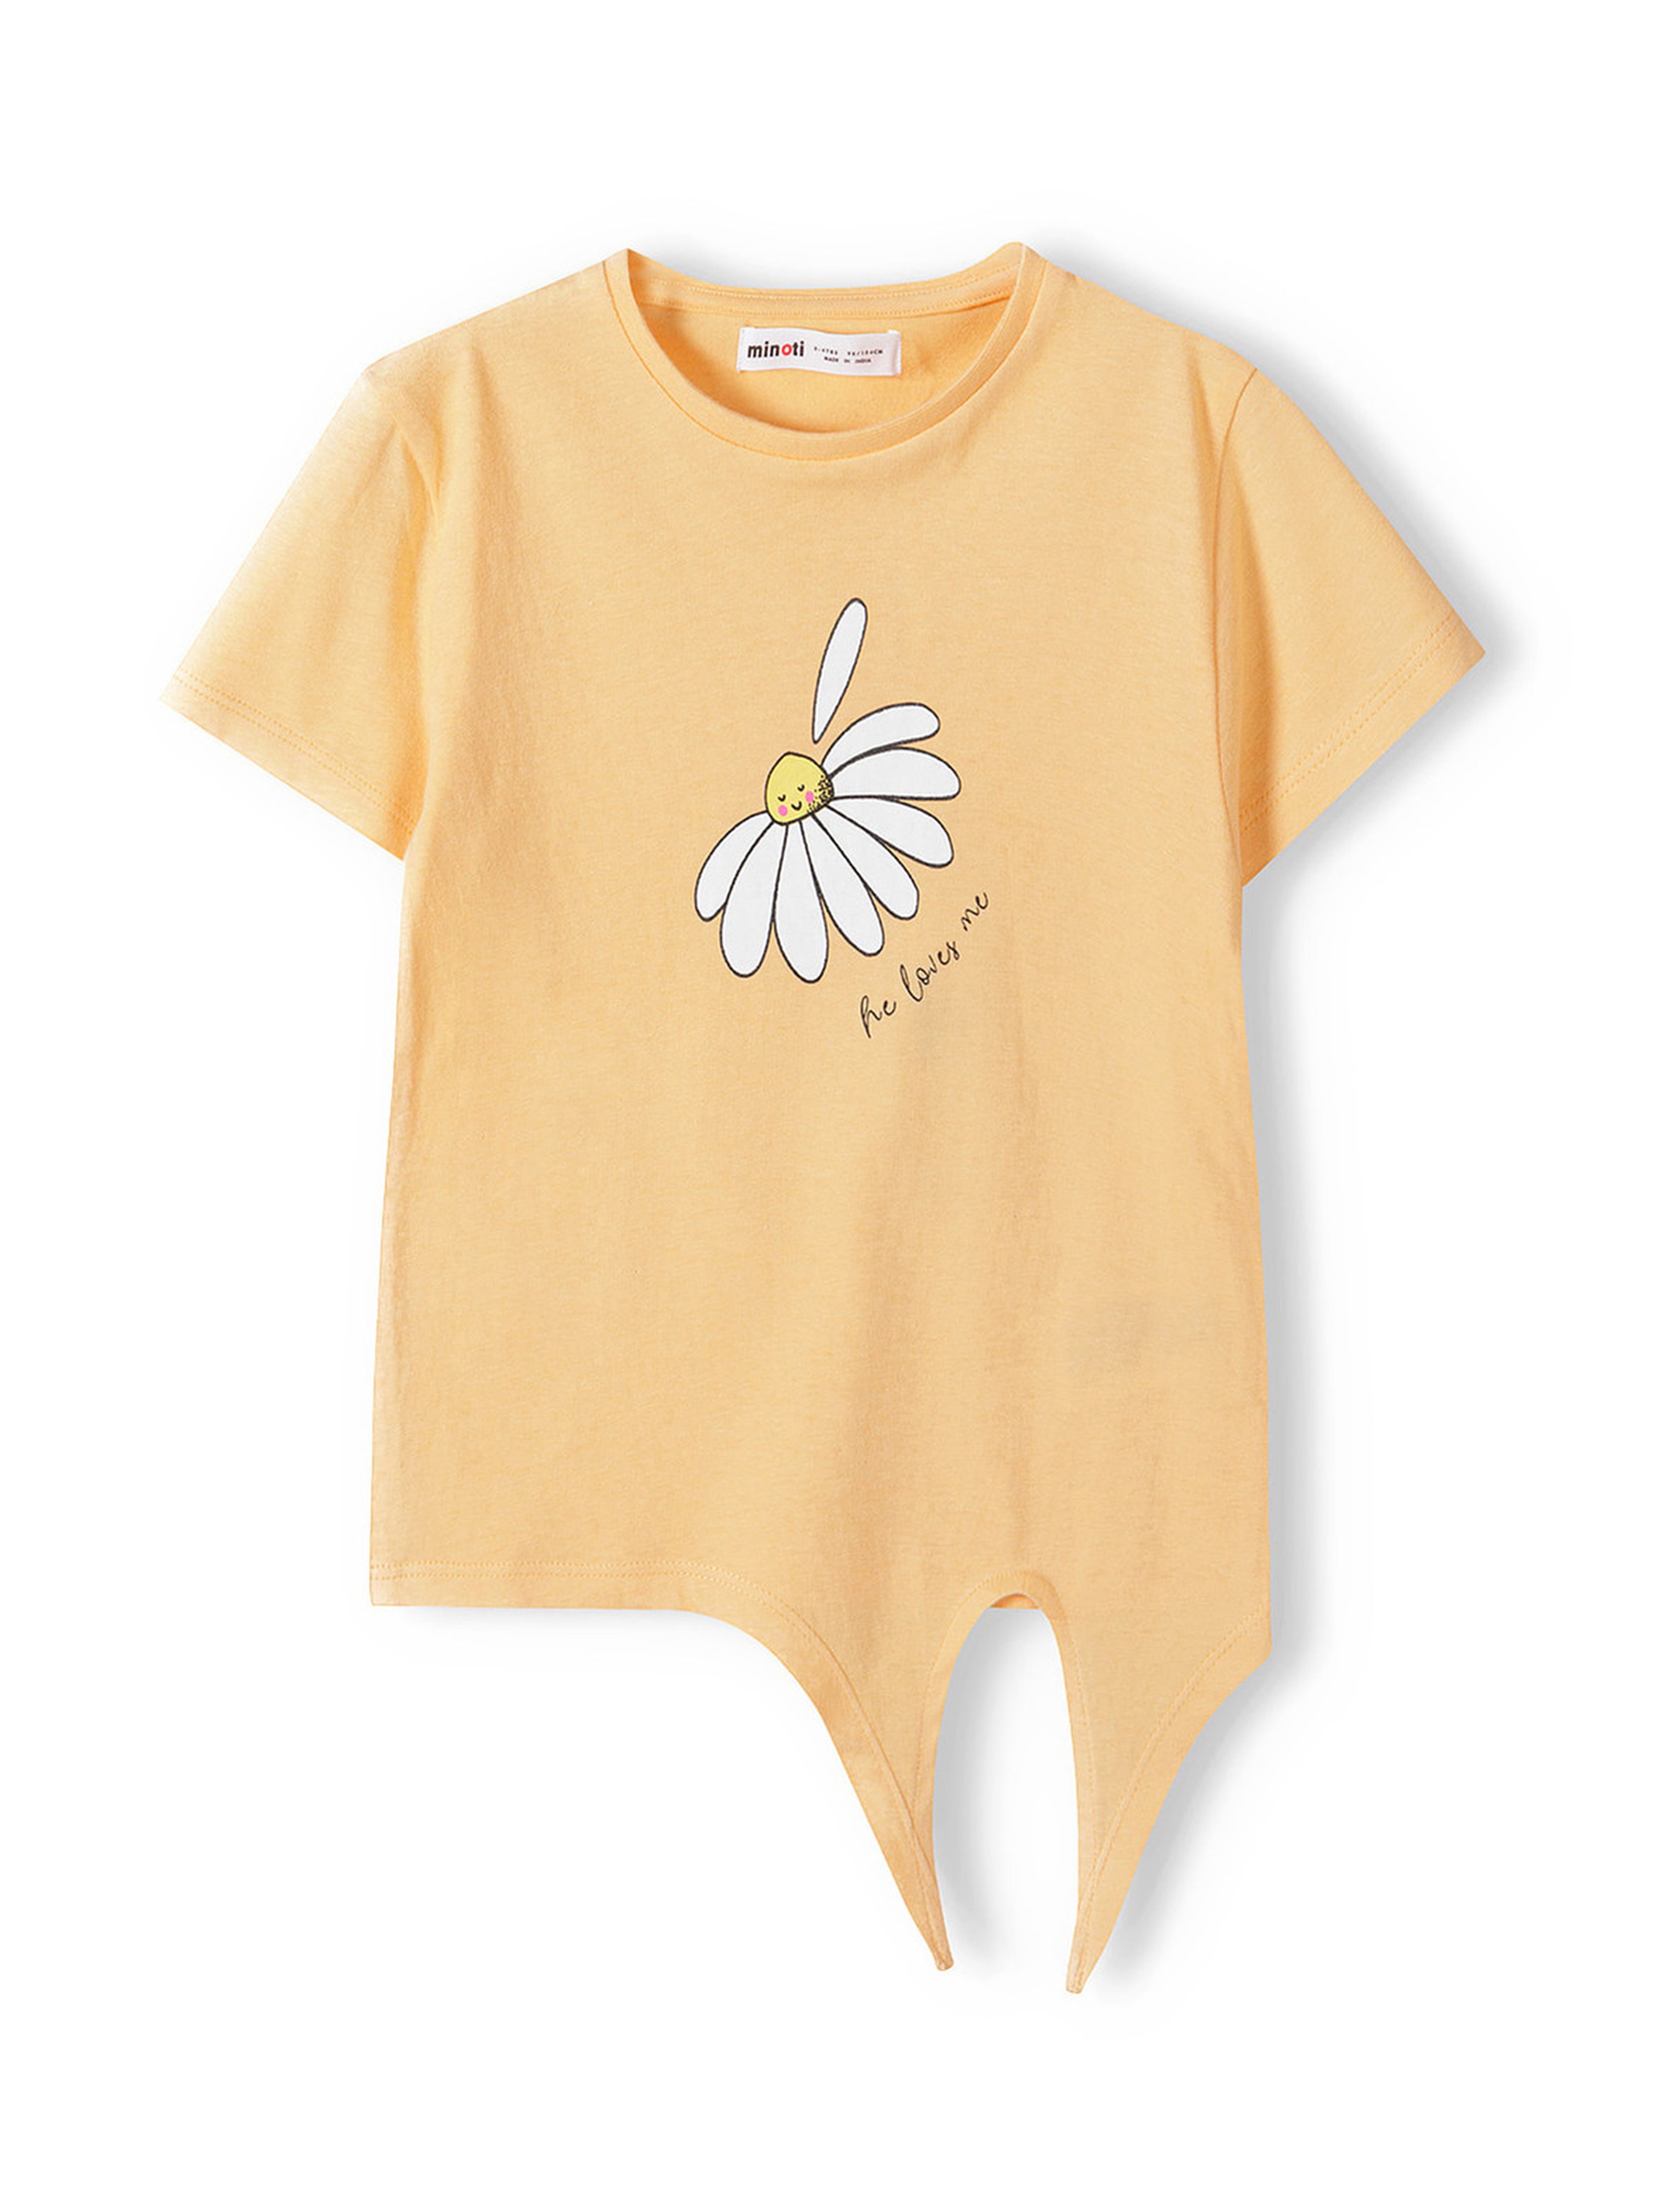 Pomarańczowa koszulka bawełniana niemowlęca z wiązaniem